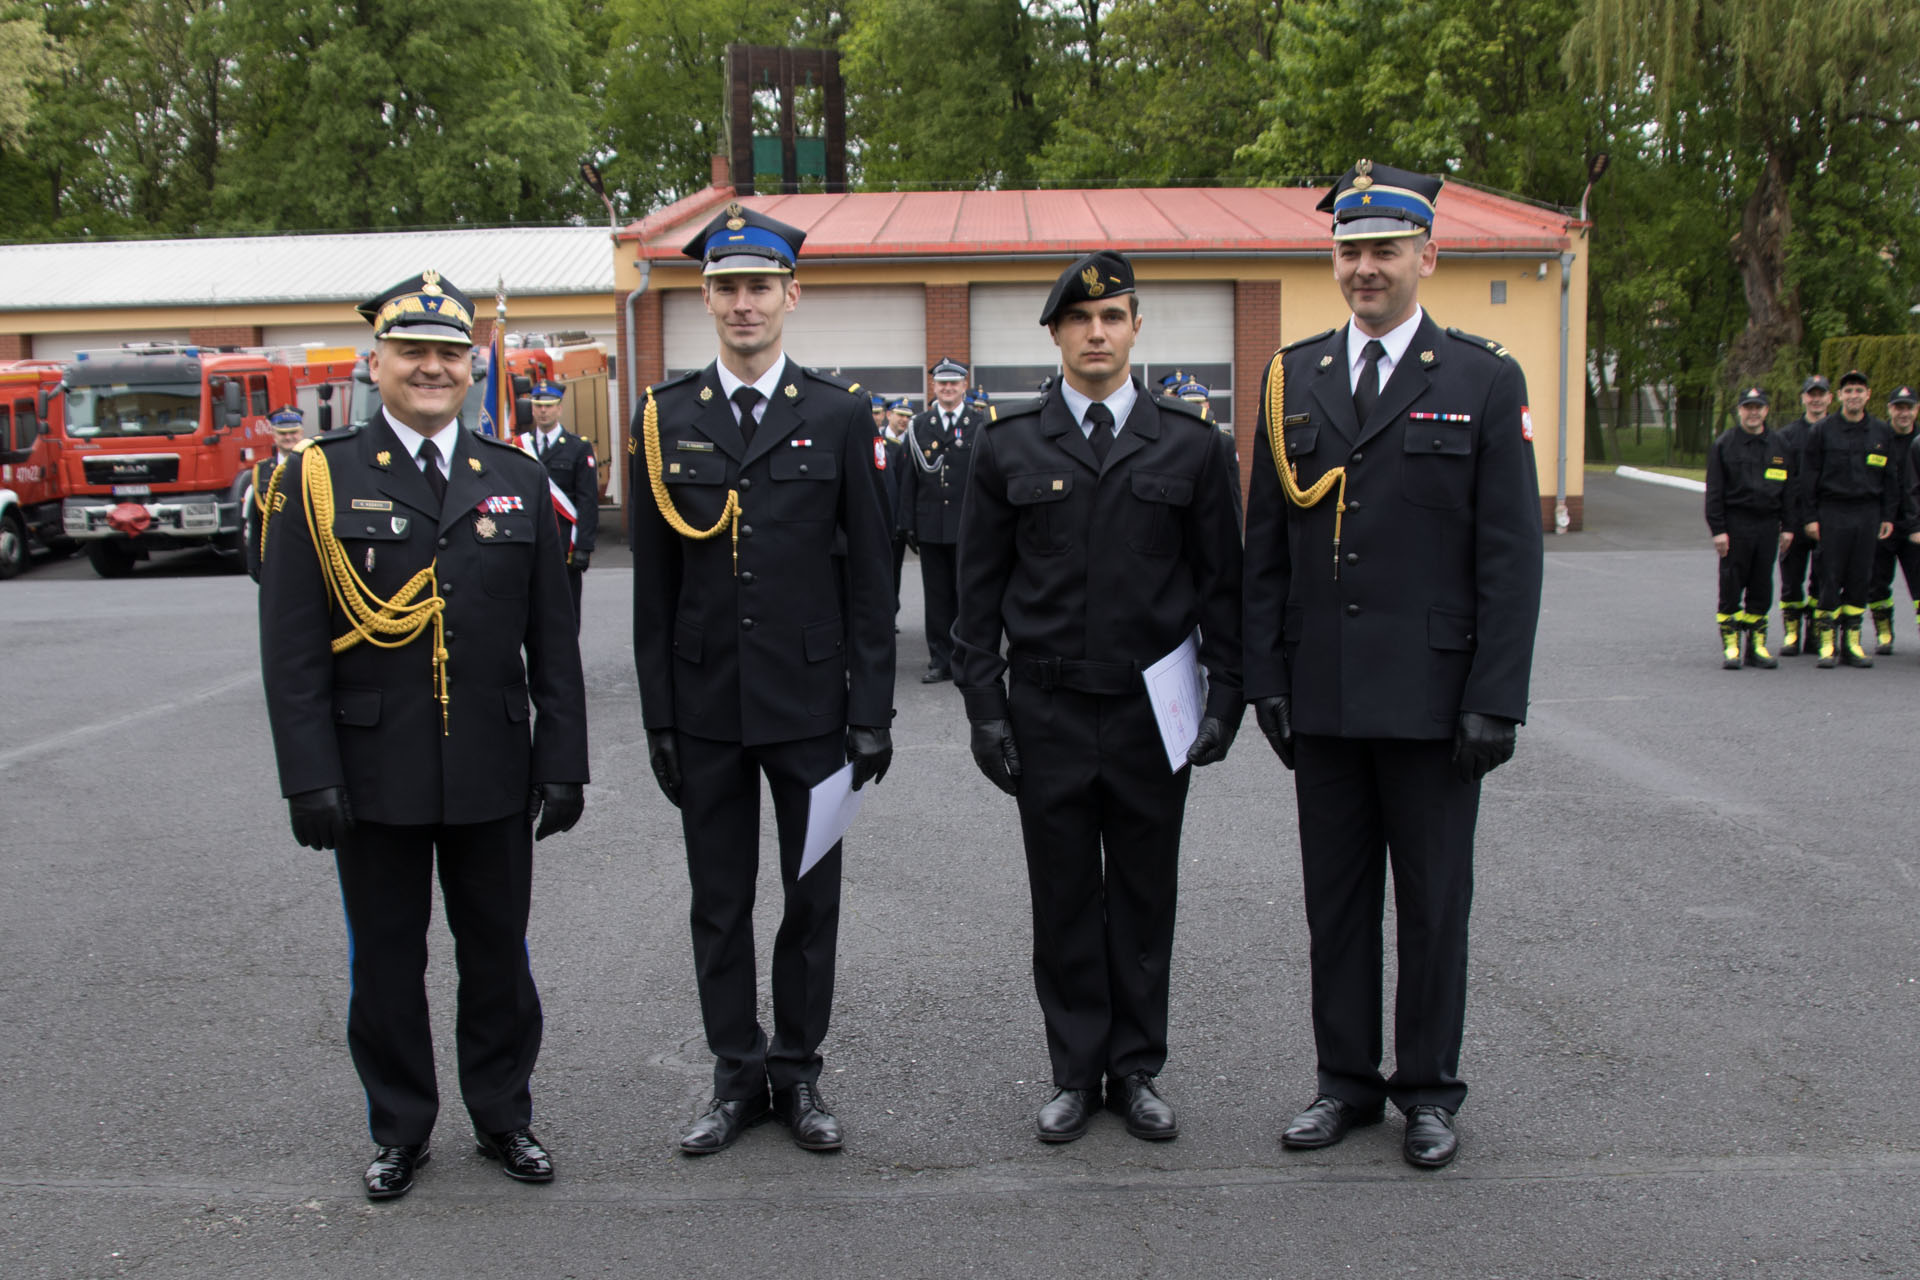 Powiatowe obchody Dnia Strażaka – strażacy awansowani na wyższe stopnie służbowe